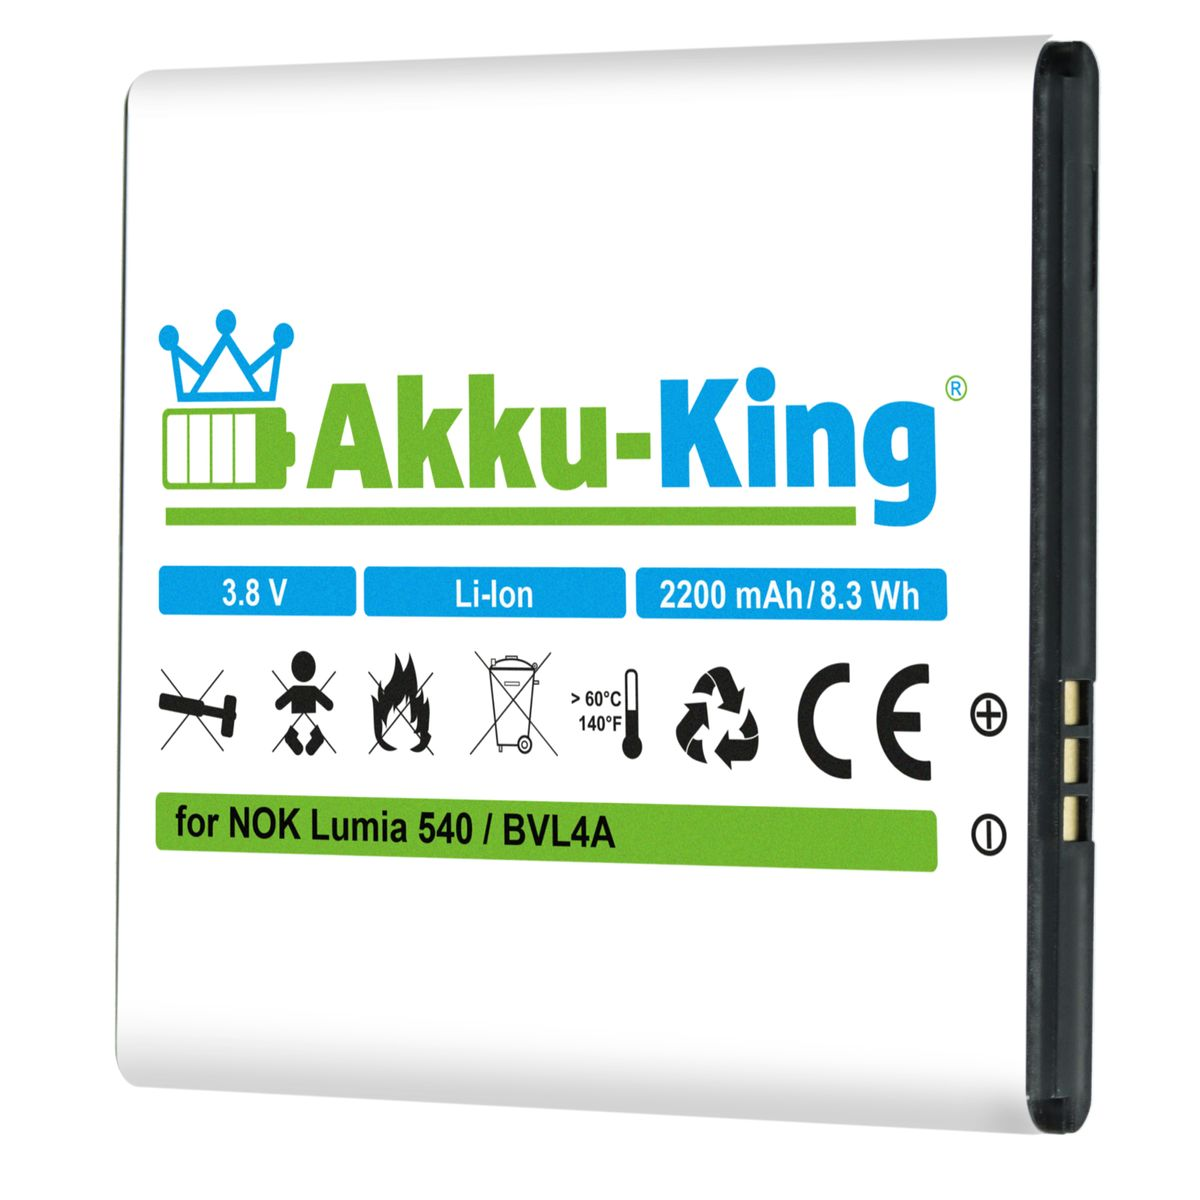 Handy-Akku, Nokia AKKU-KING 2200mAh Akku kompatibel Li-Ion BV-L4A mit 3.8 Volt,